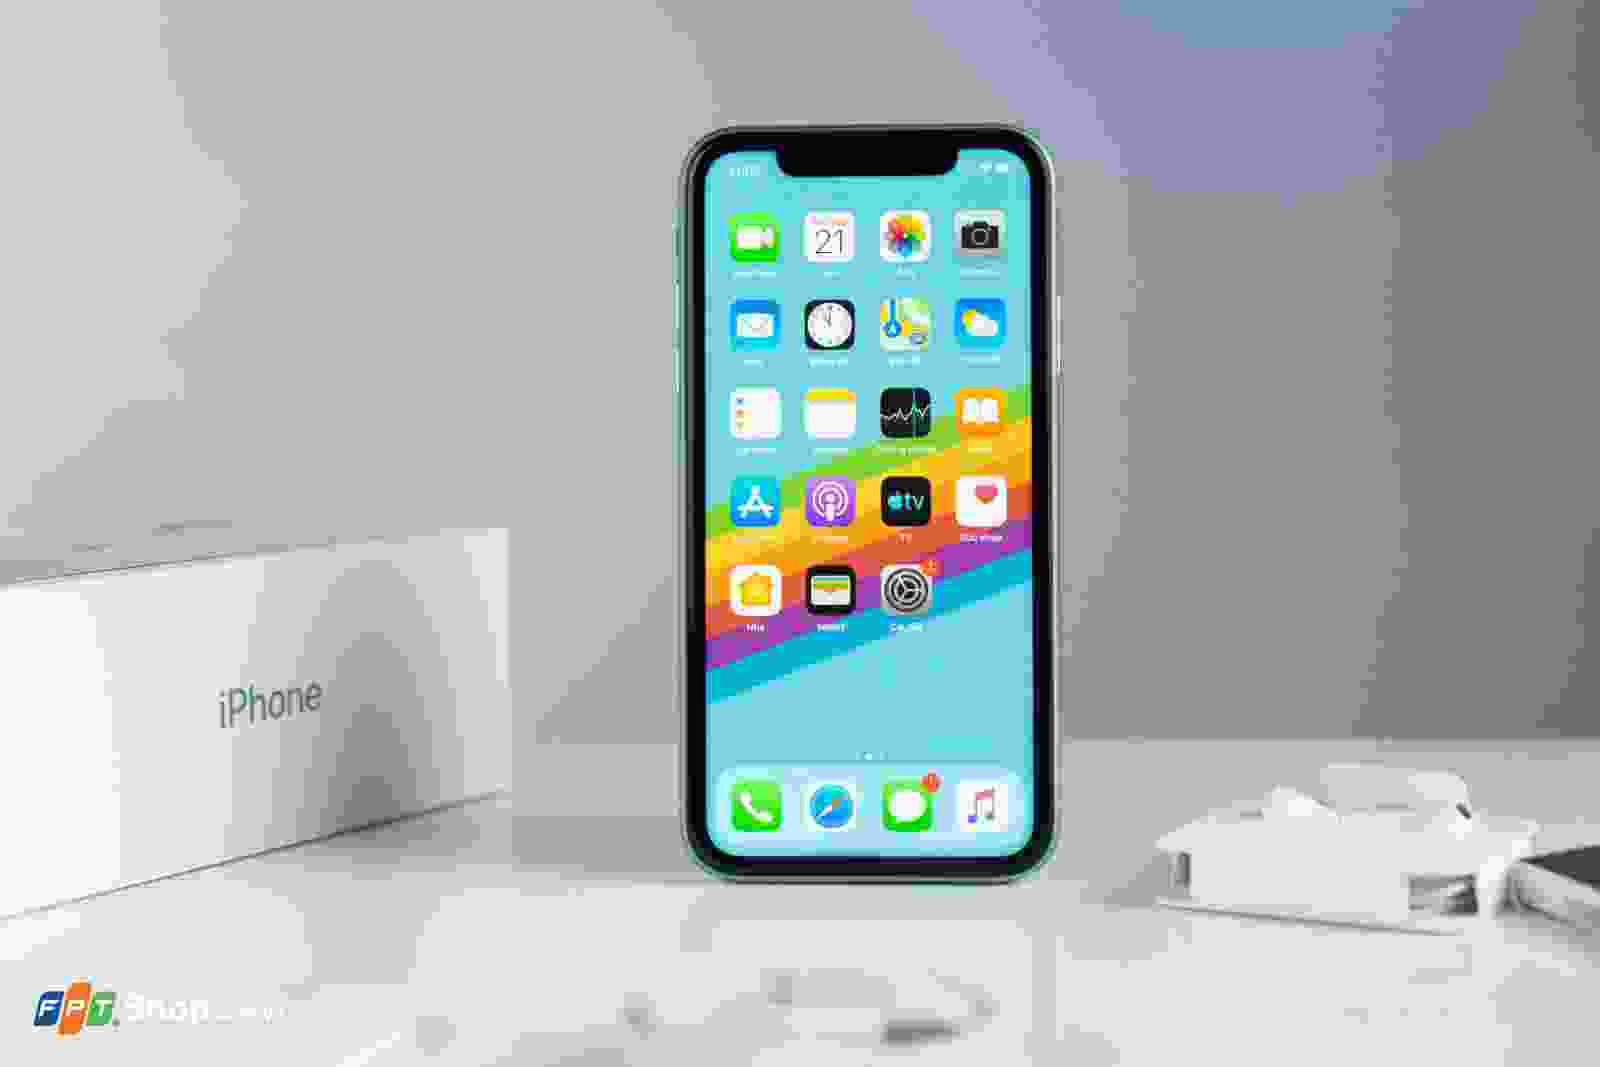 Đánh giá về thiết kế và màn hình iPhone 11 sẽ giúp bạn hiểu rõ hơn về sản phẩm đang được đánh giá cao của Apple. Với sự kết hợp hoàn hảo giữa thiết kế sang trọng và màn hình tuyệt vời, chiếc điện thoại này chắc chắn sẽ khiến bạn hài lòng.